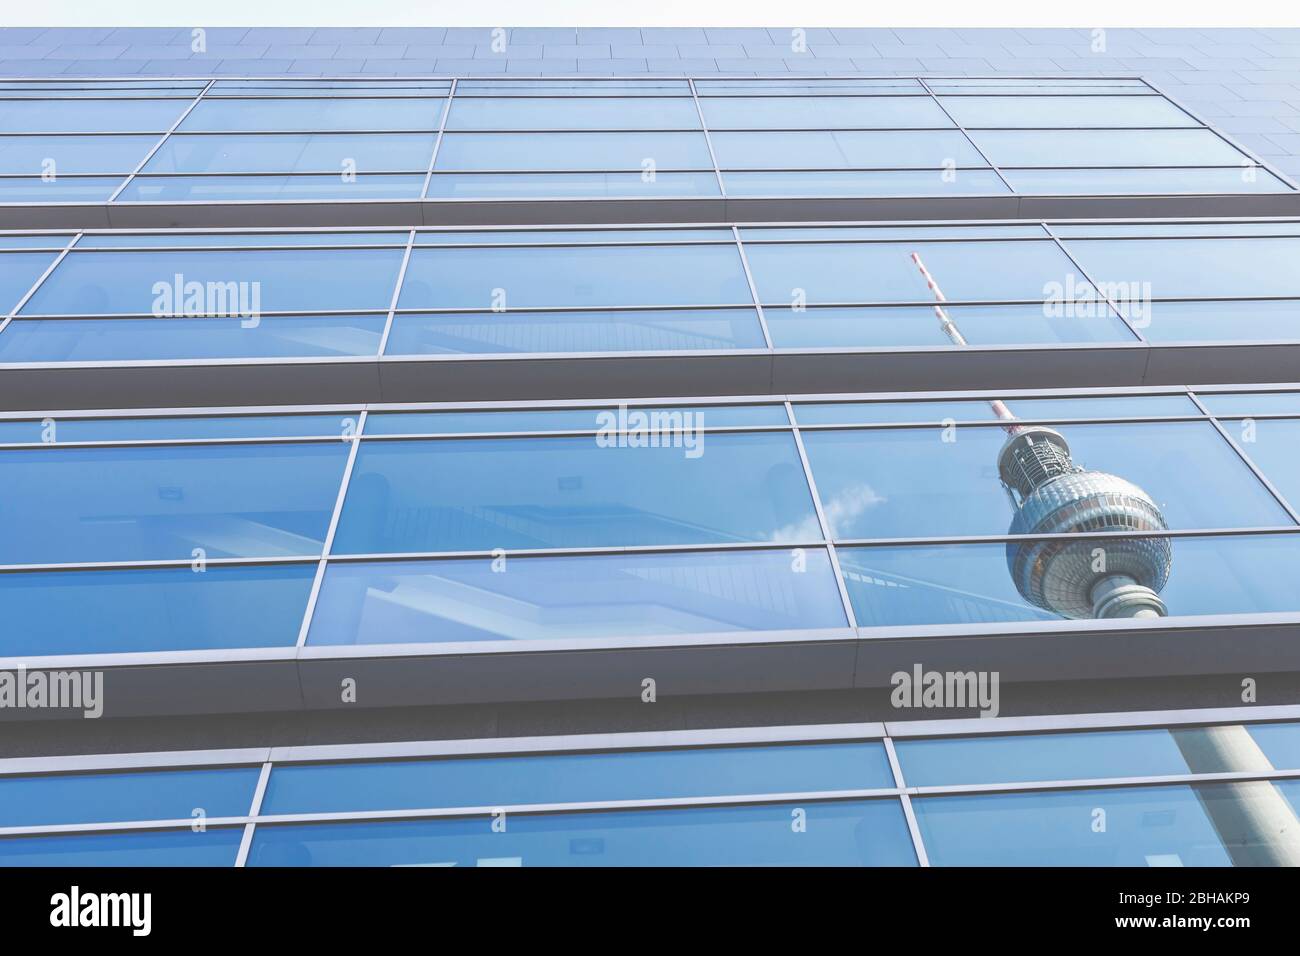 Reflet de la tour de télévision de Berlin sur Alexanderplatz dans une façade en verre d'un bâtiment. Banque D'Images